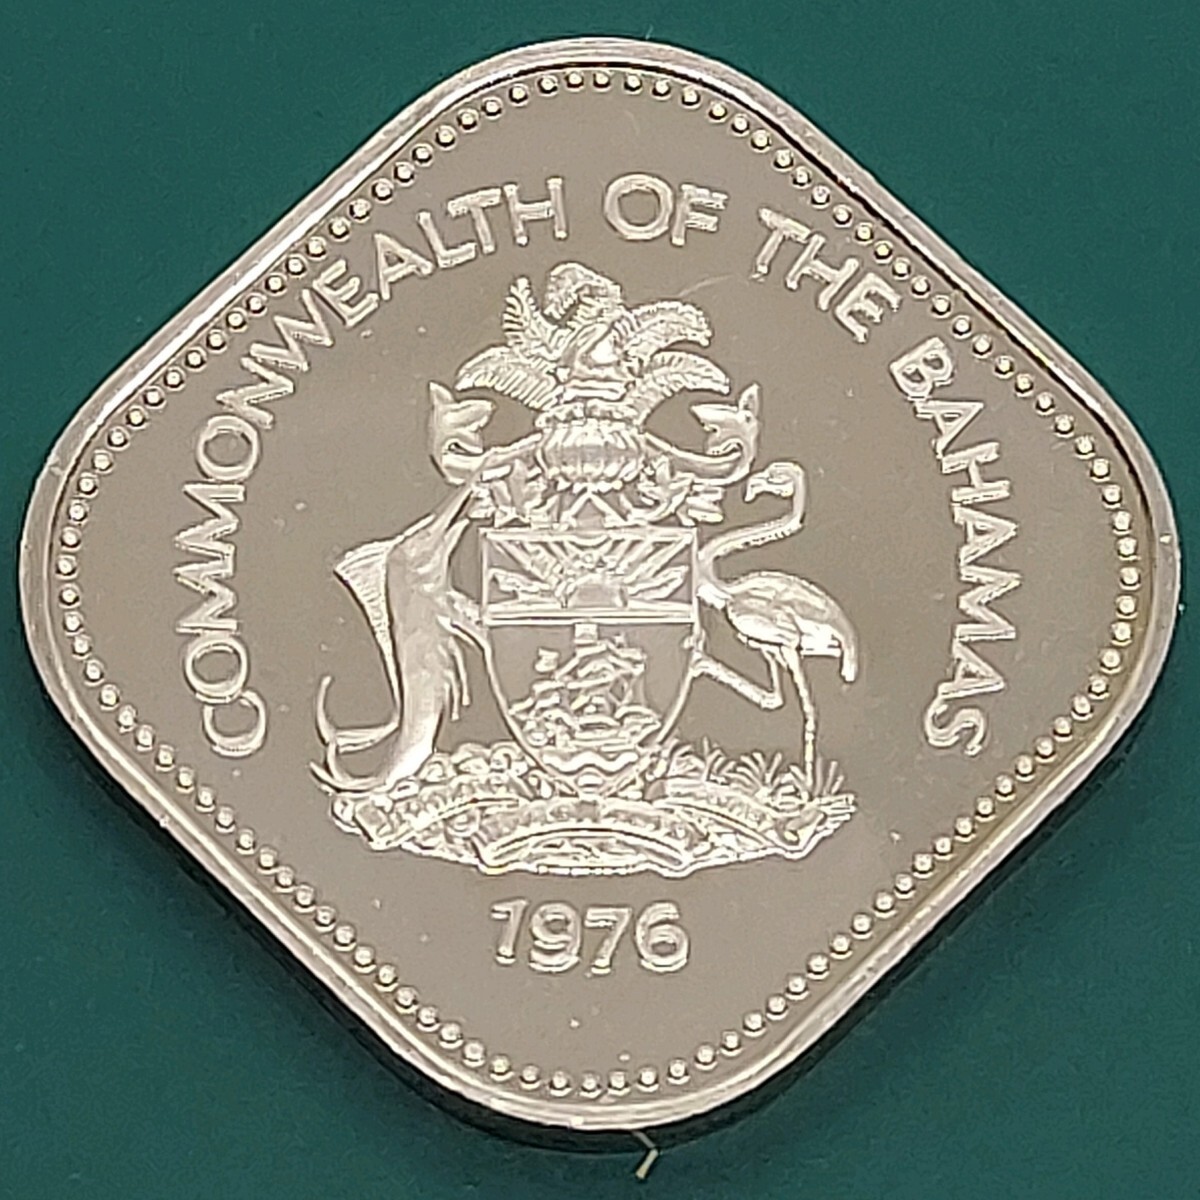 [60311] Багамские острова 15 центов белые медные монеты примерно 25,3 мм 1976 г. Доказательство иностранных монет